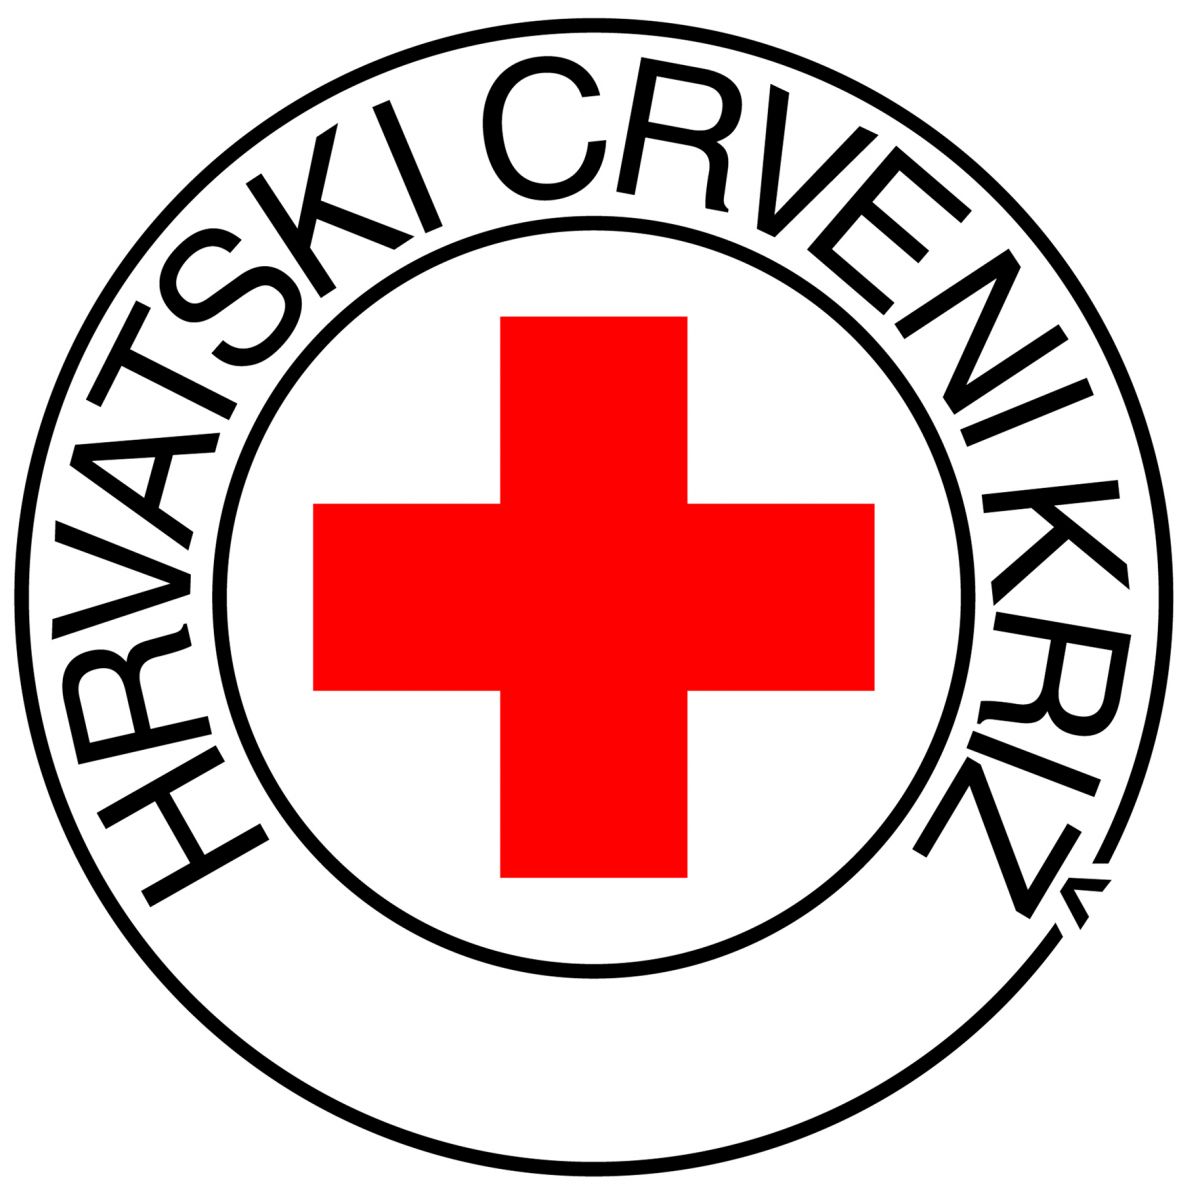 Hrvatski Crveni križ prikuplja i materijalne donacije